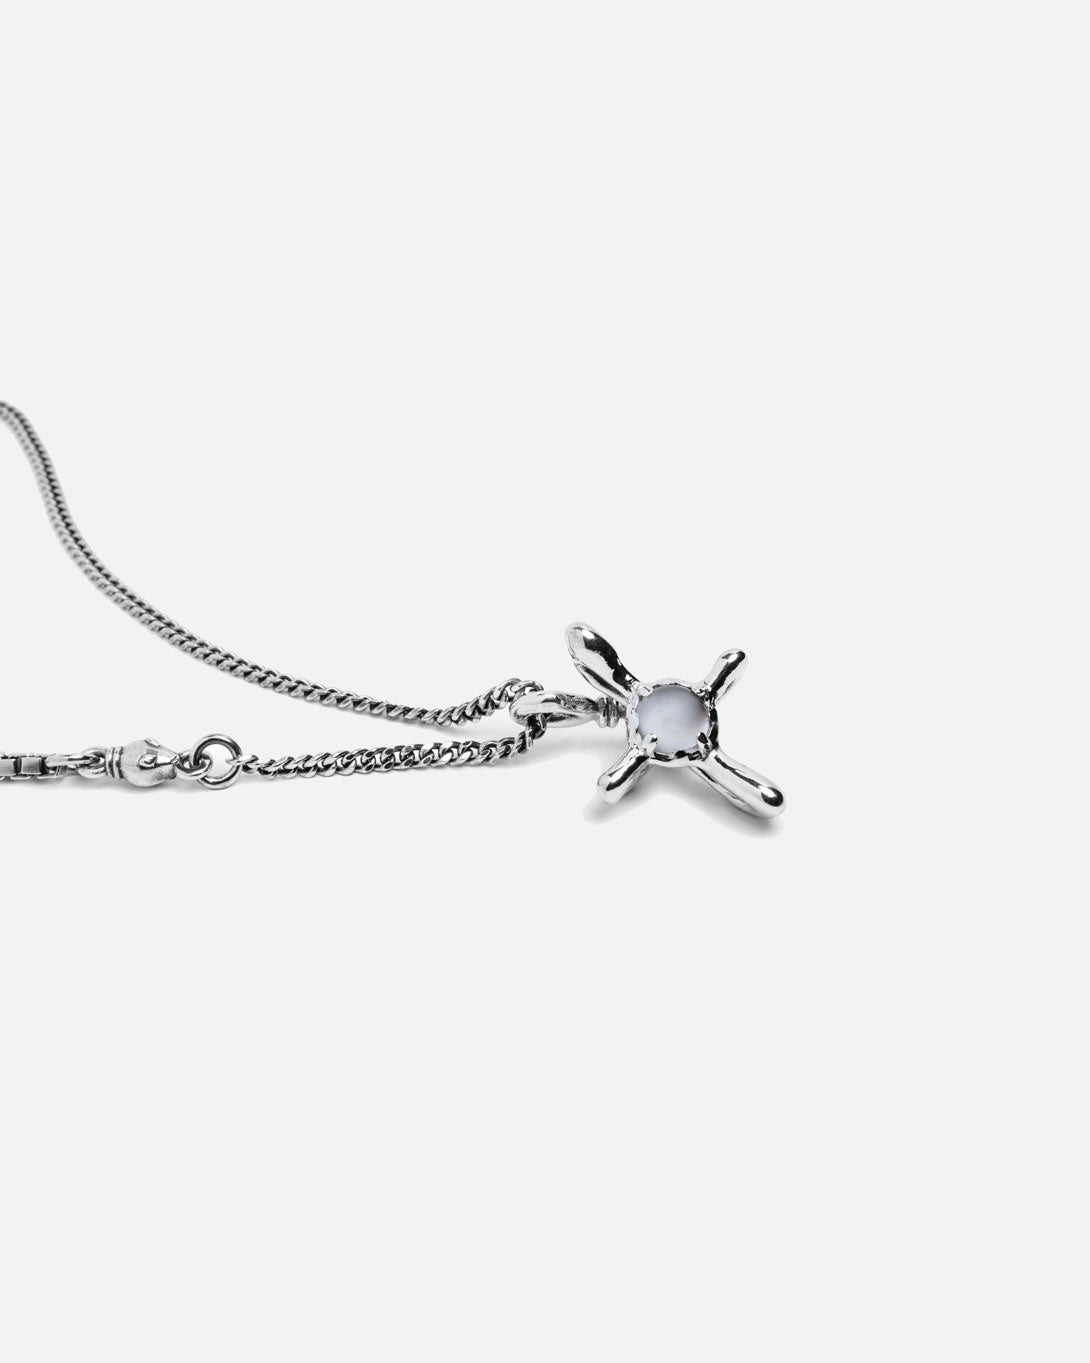 Exo Necklace - Jewelry - Tant D'Avenir - Elevastor